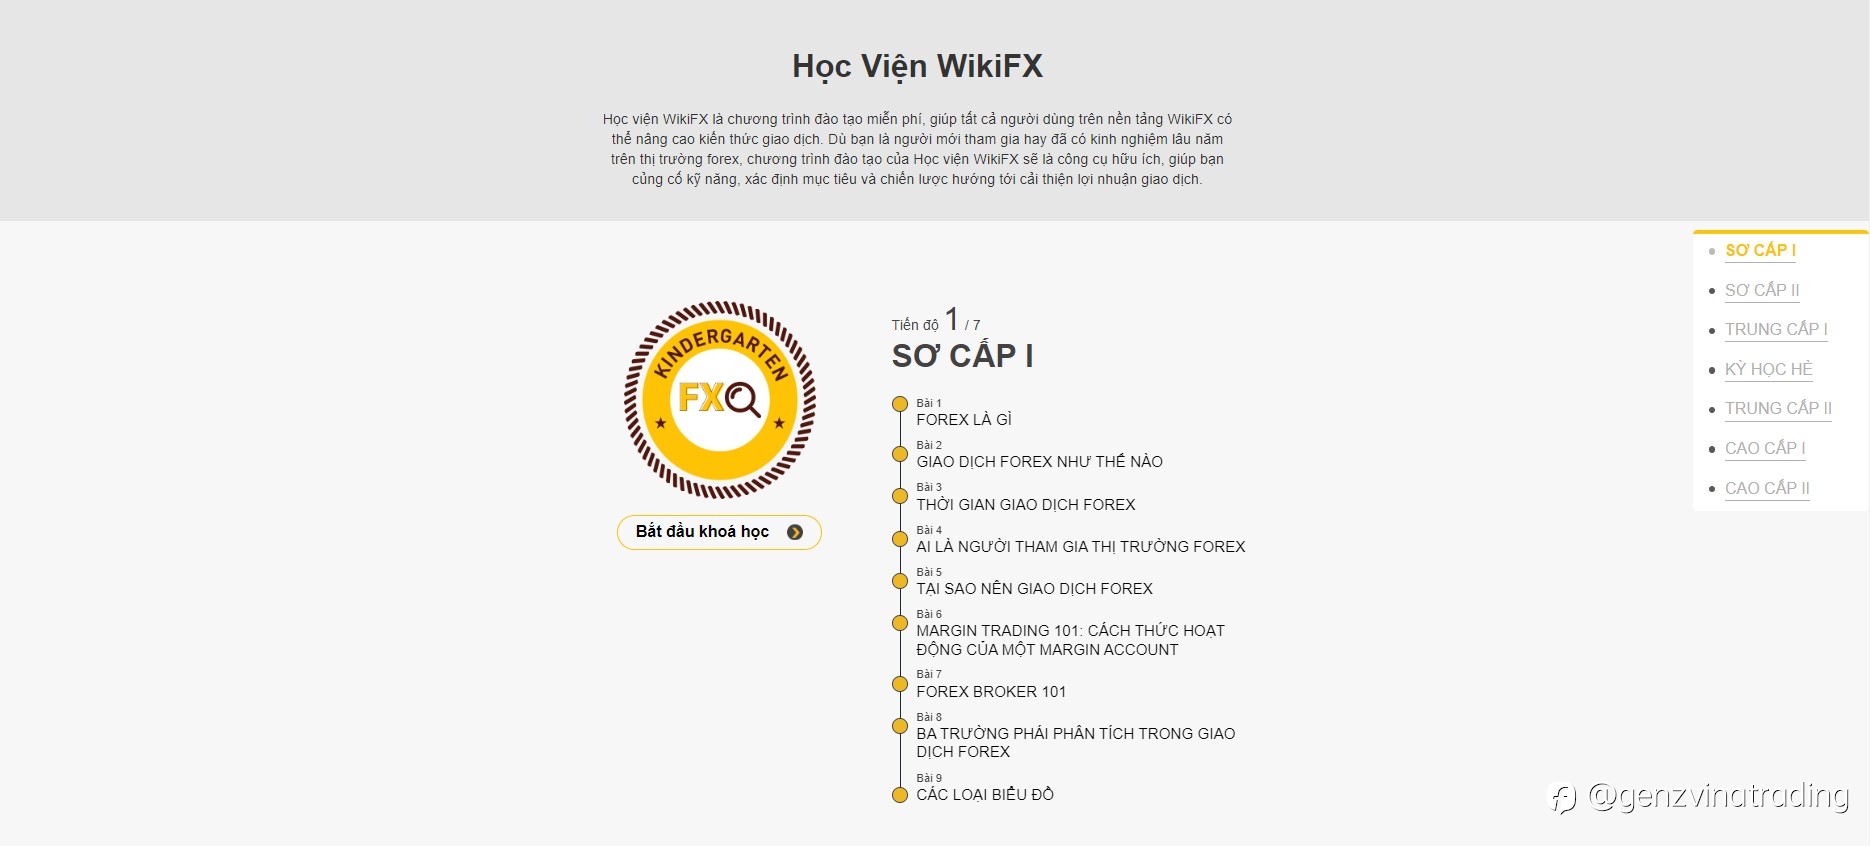 WikiFX ra mắt Học Viện WikiFX